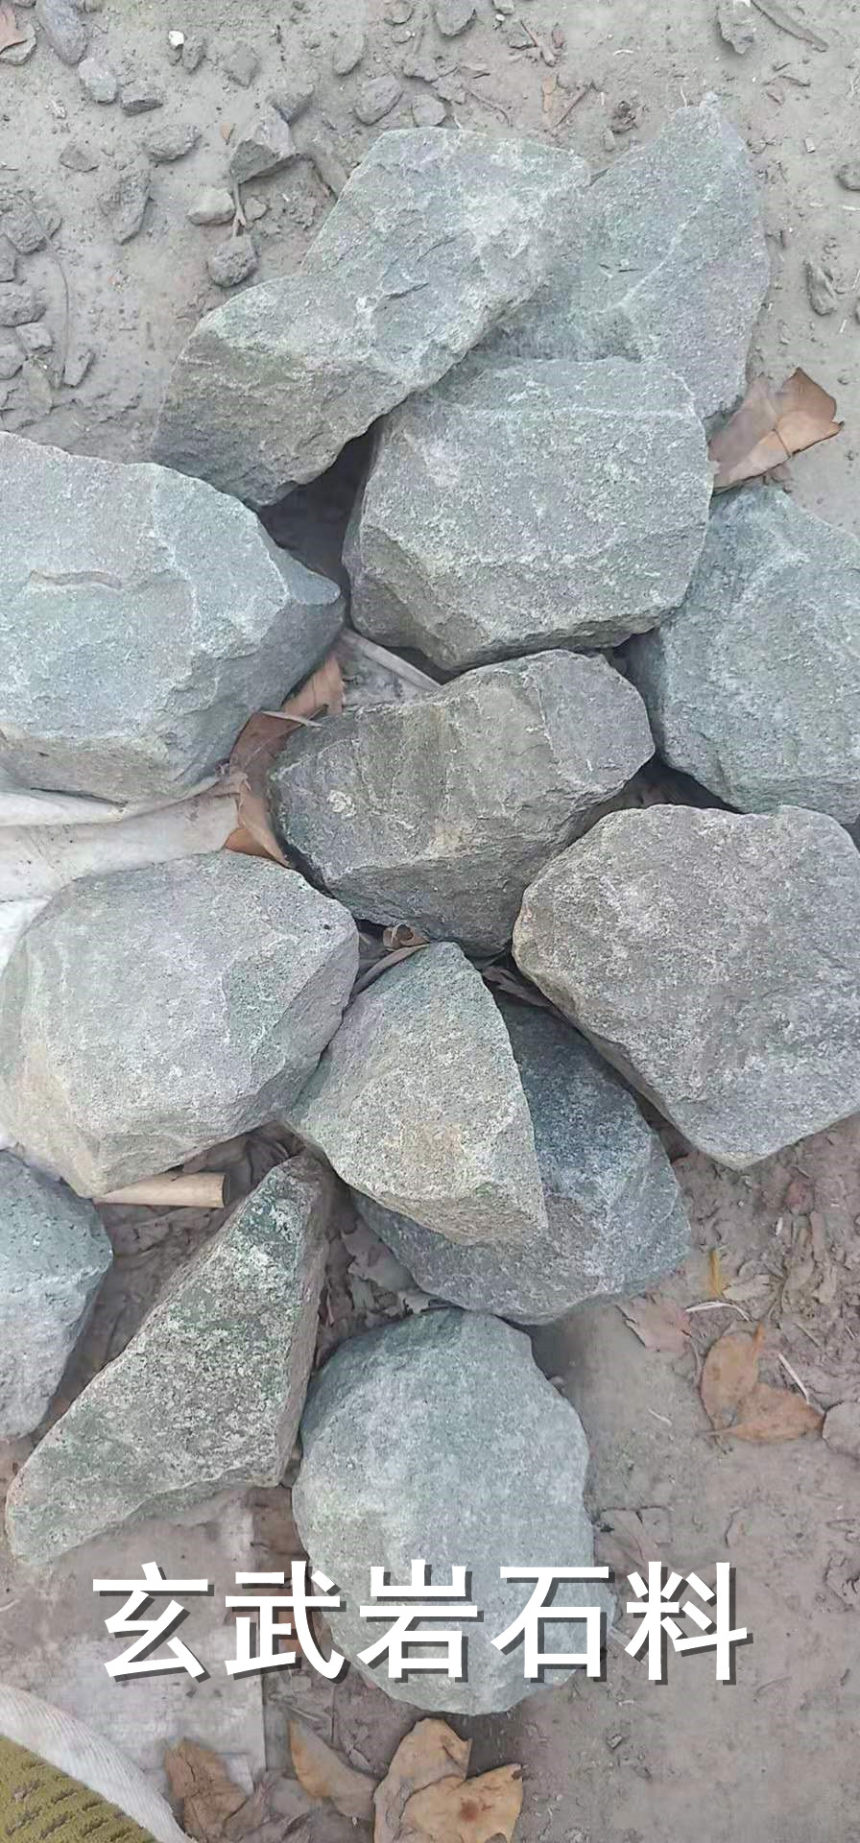 高速用玄武岩石料济源多少钱一立方米——展飞石材